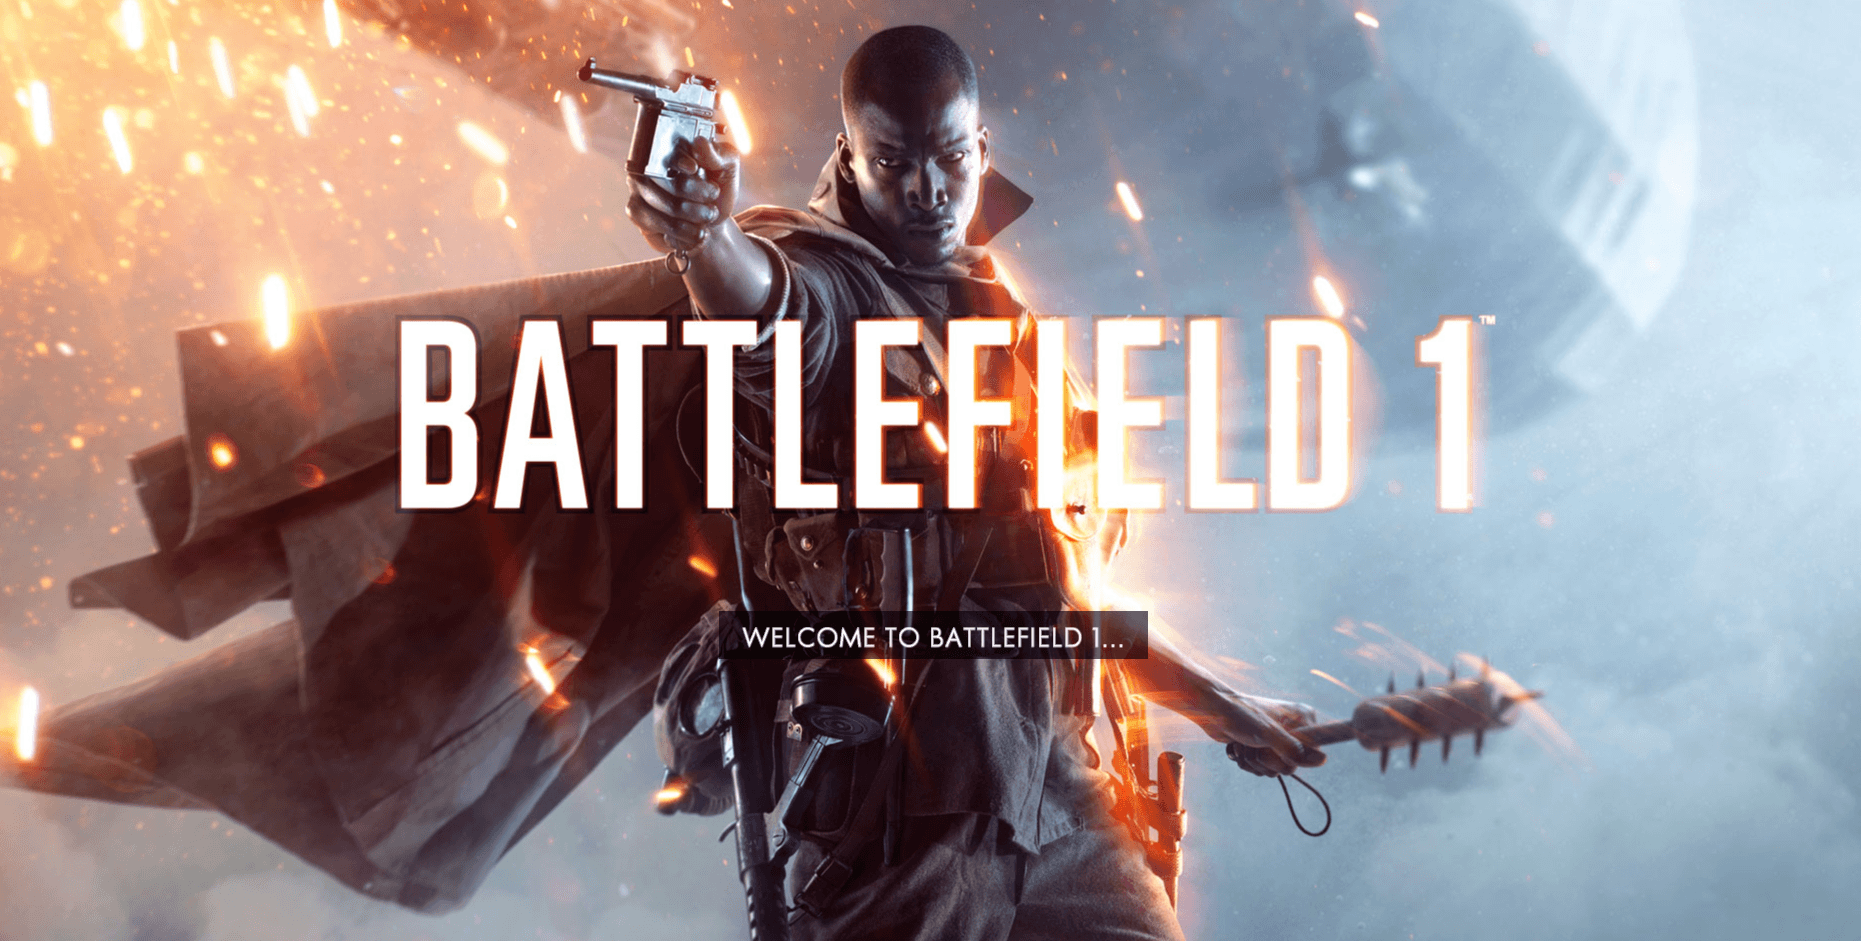 [Review] Battlefield 1 ประวัติศาสตร์สงครามโลกครั้งใหม่เกิดขึ้นมาอีกครั้งในรูปแบบ Video Game